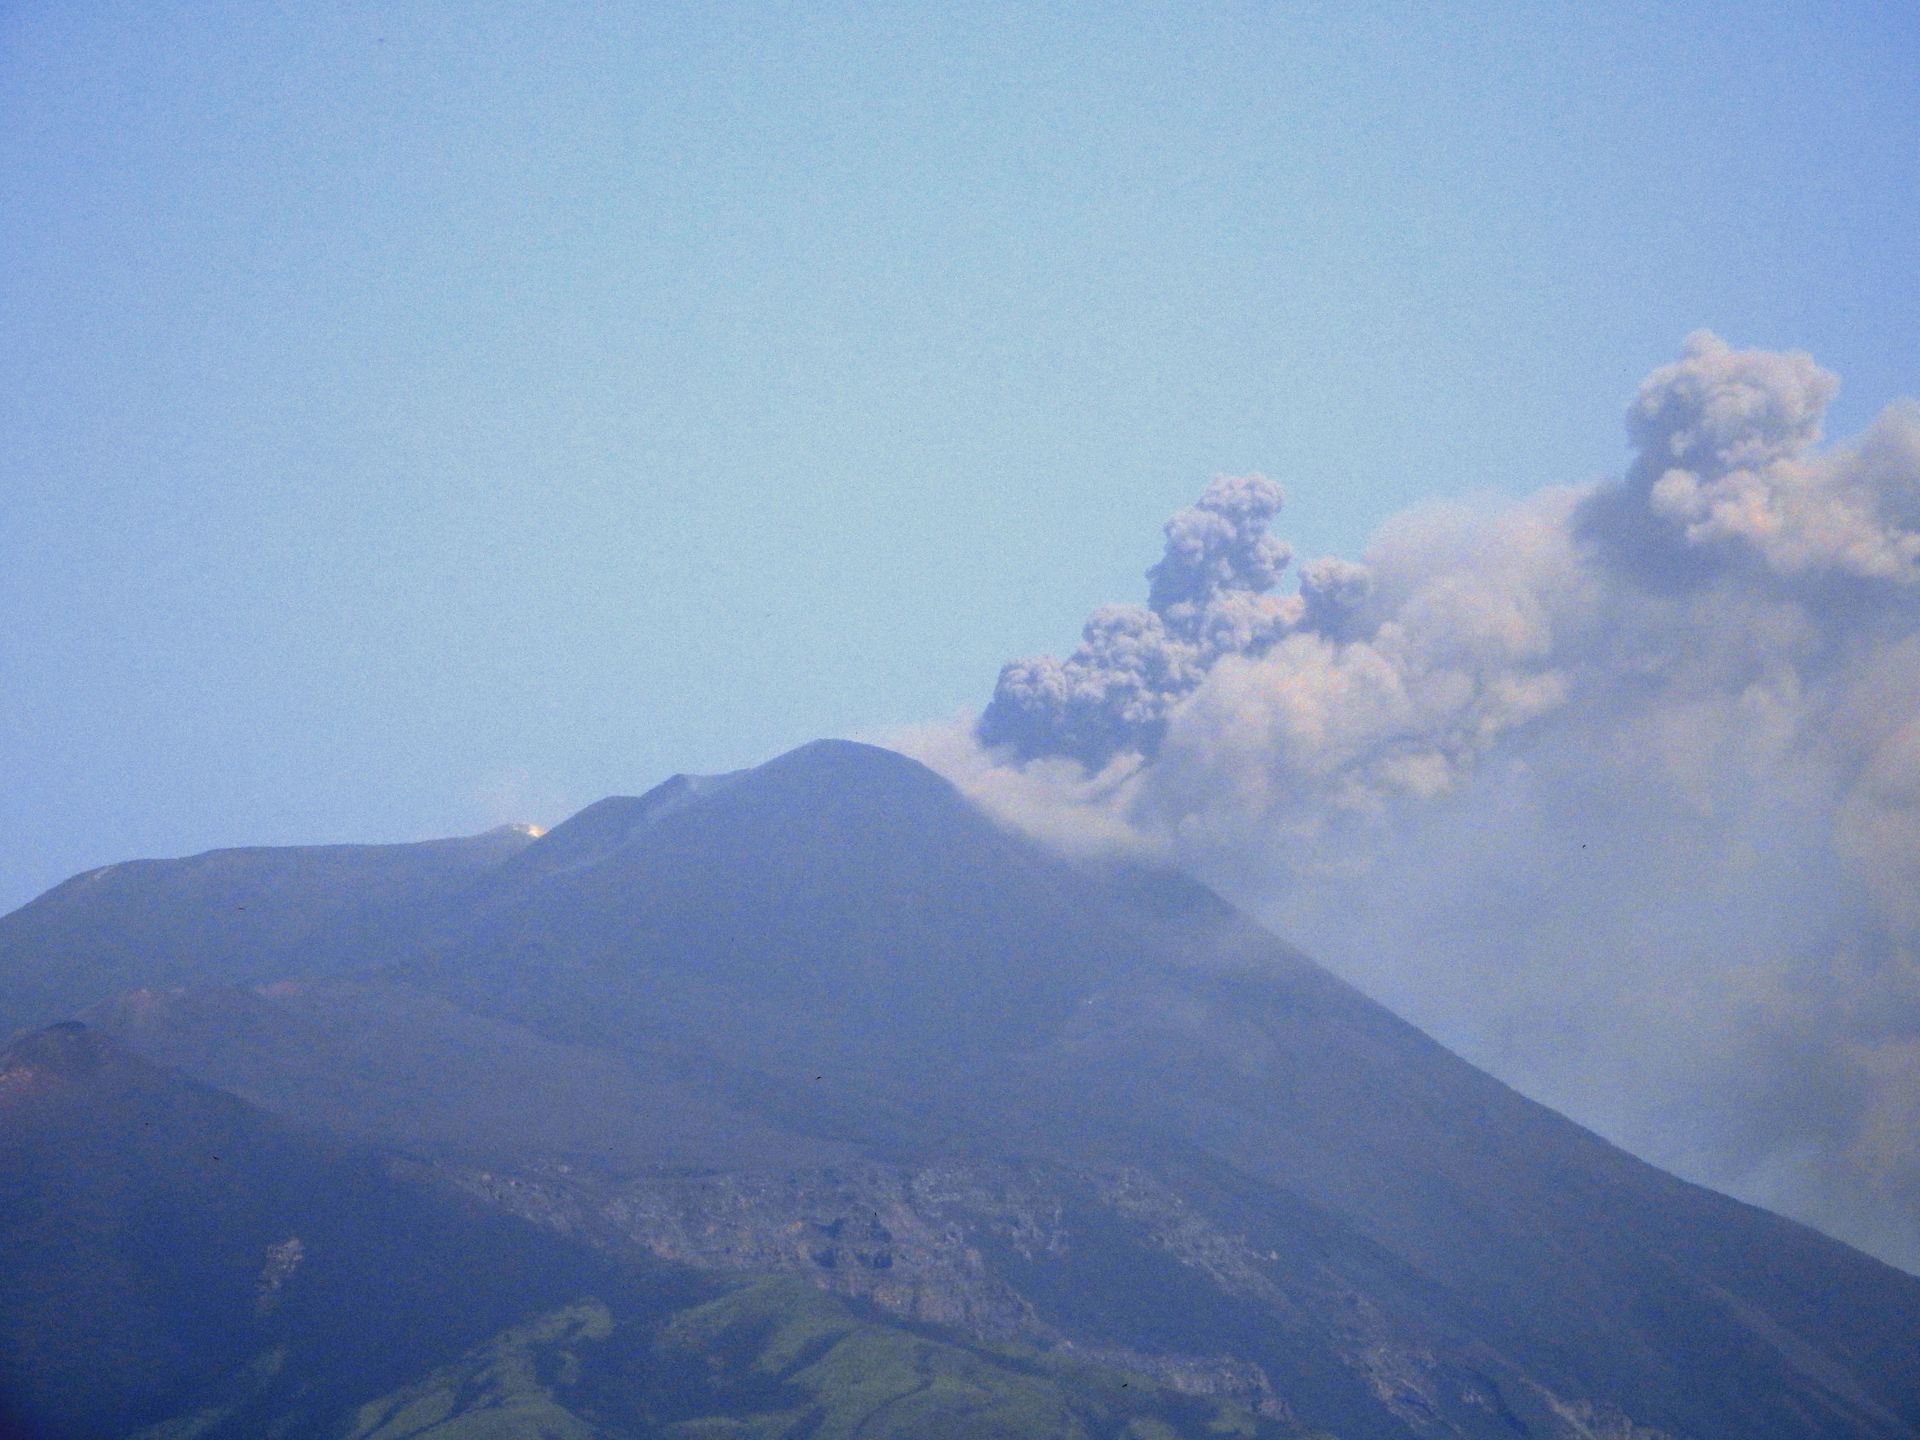 Etna, nube eruttiva alta 4mila metri e attività esplosiva in corso: ecco la situazione del Cratere di Sud Est